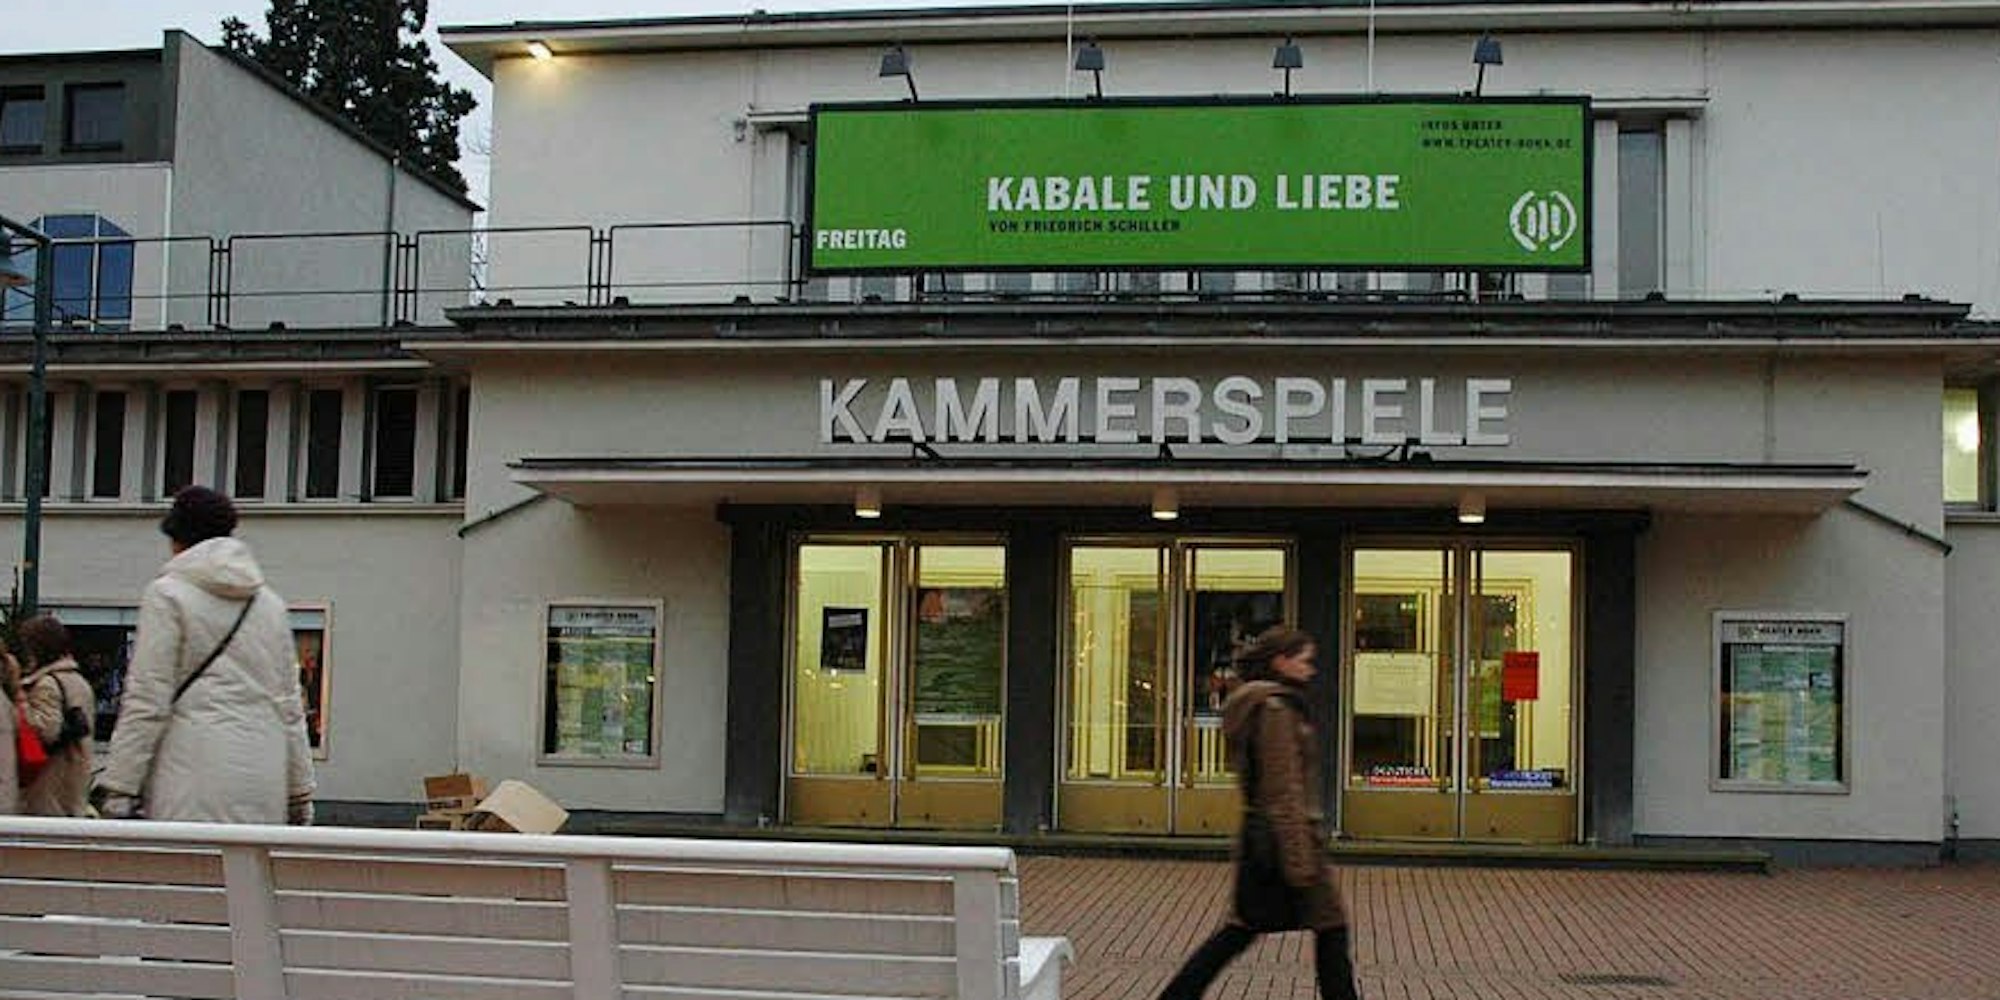 Der 50er-Jahre-Bau der Kammerspiele in Bad Godesberg mit 473 Plätzen beherbergt die Schauspielbühne des Dreispartenhauses Theater Bonn mit eigenem Ensemble.